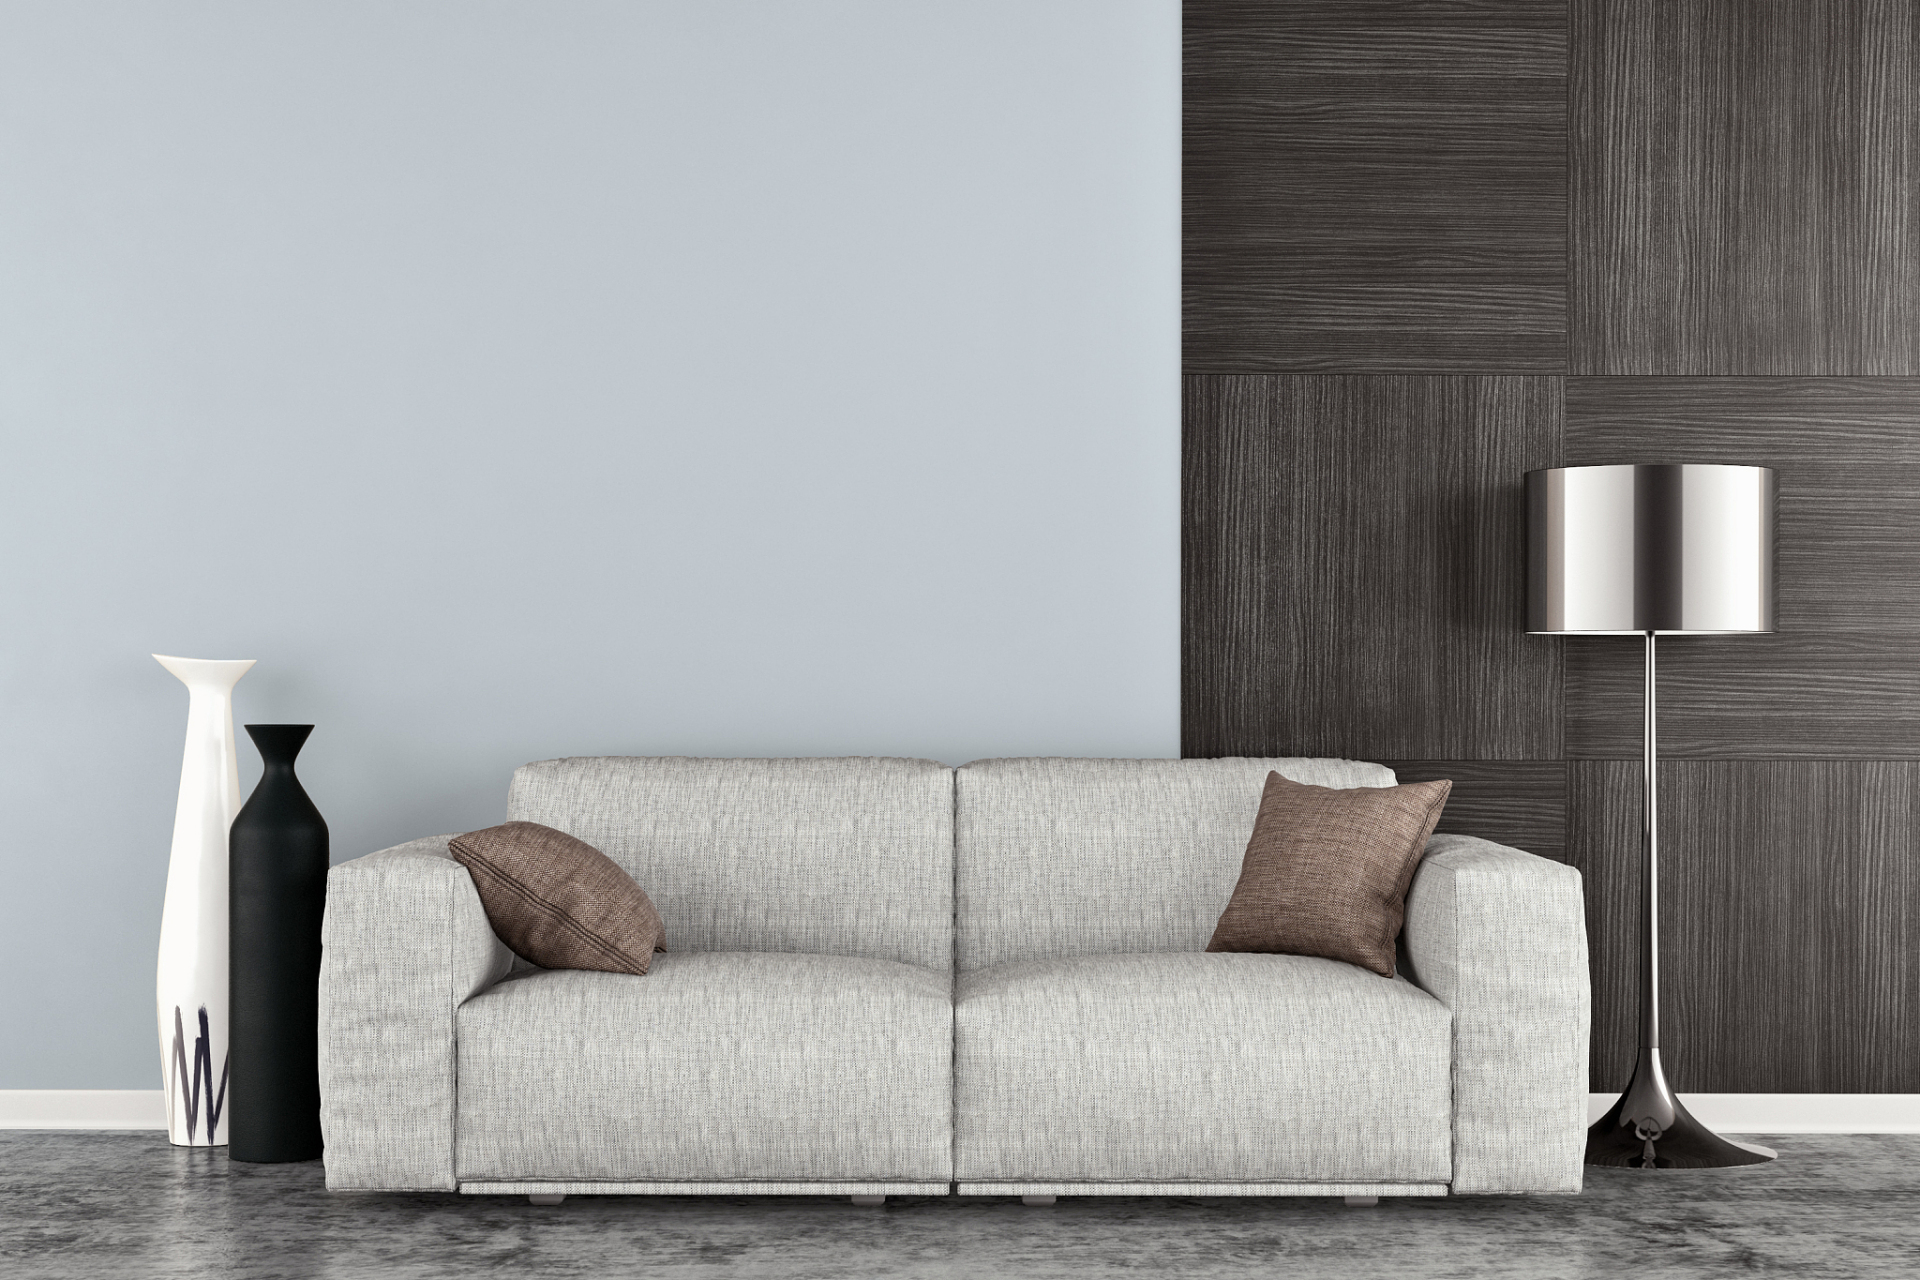 灰色沙发配什么颜色的沙发垫好看呢?